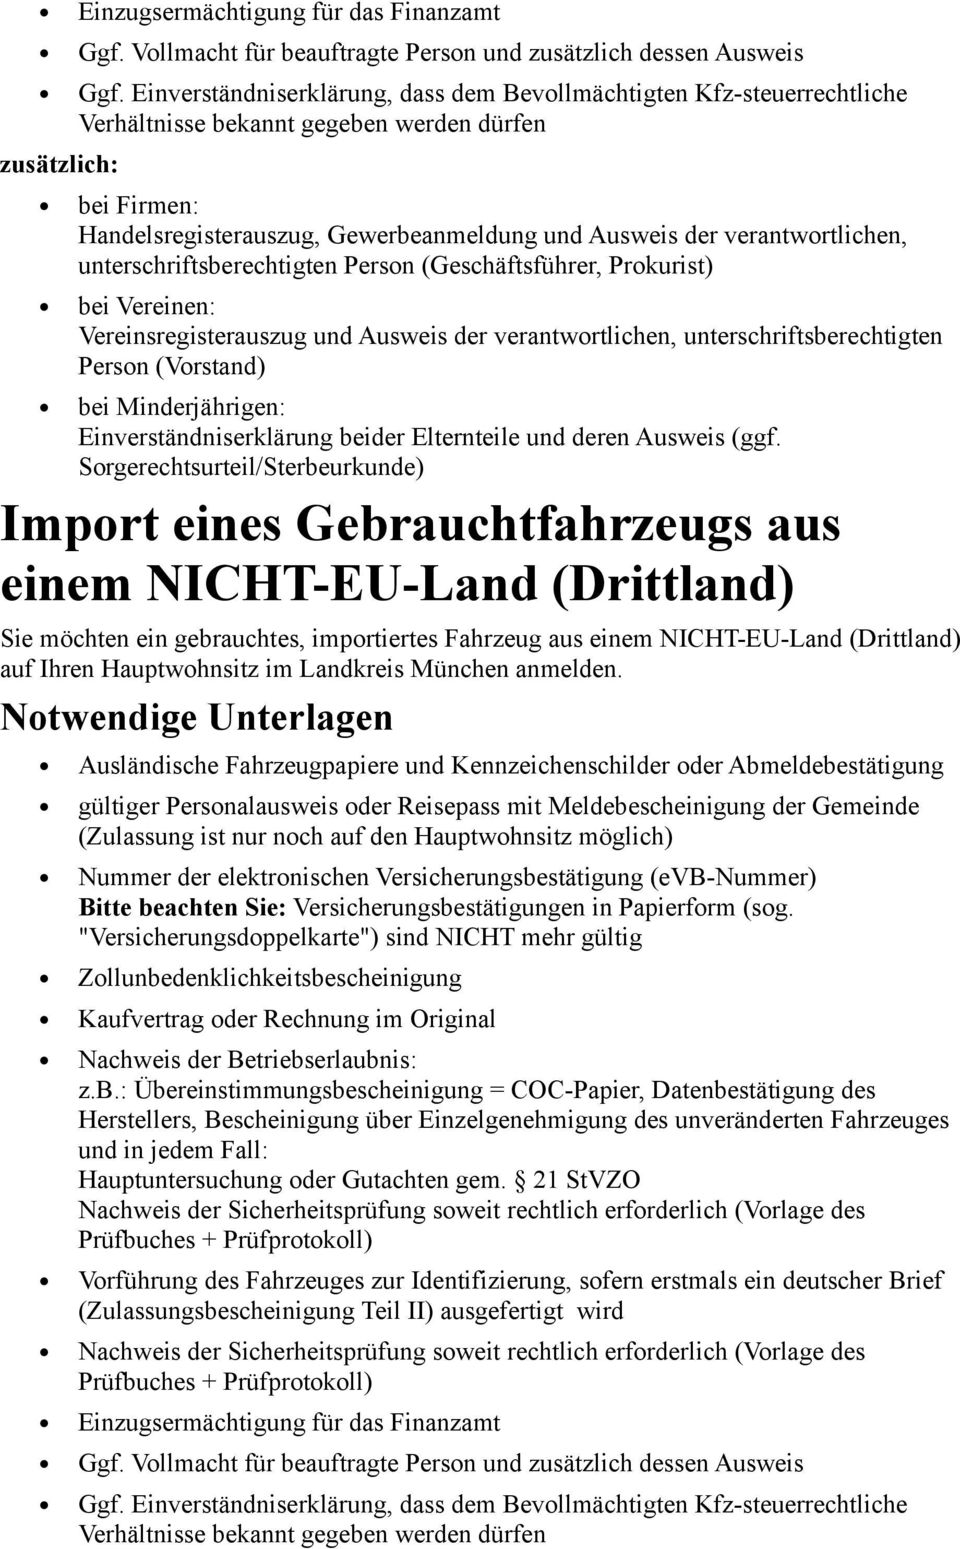 einem NICHT-EU-Land (Drittland) auf Ihren Hauptwohnsitz im Landkreis München anmelden.